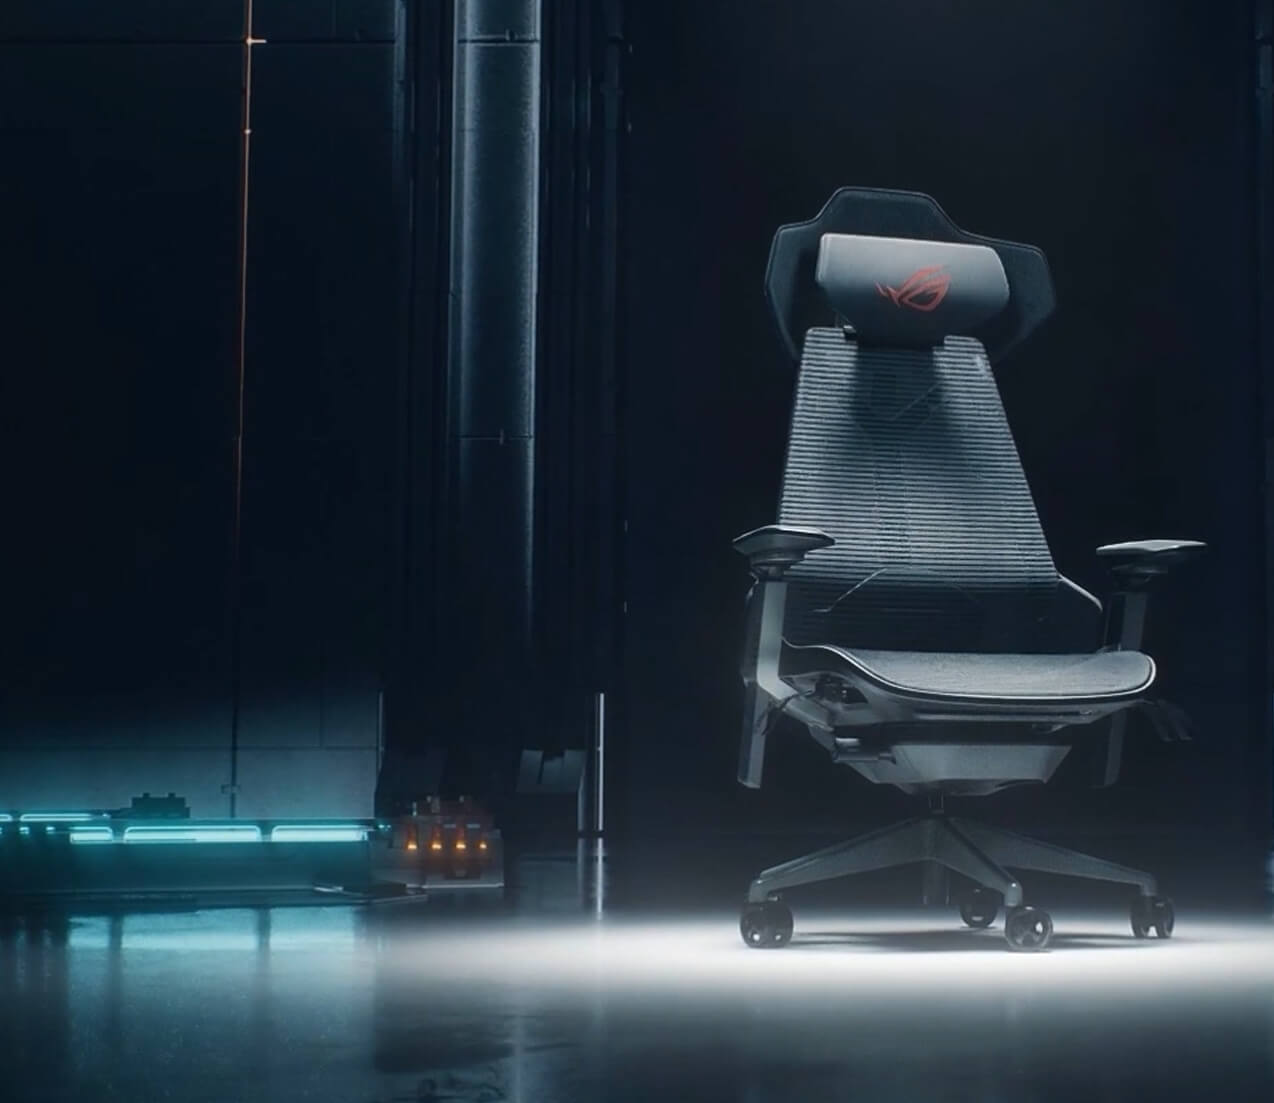 Fotel gamingowy ROG Destrier Ergo, pokazany w futurystycznym pomieszczeniu z elektroniką